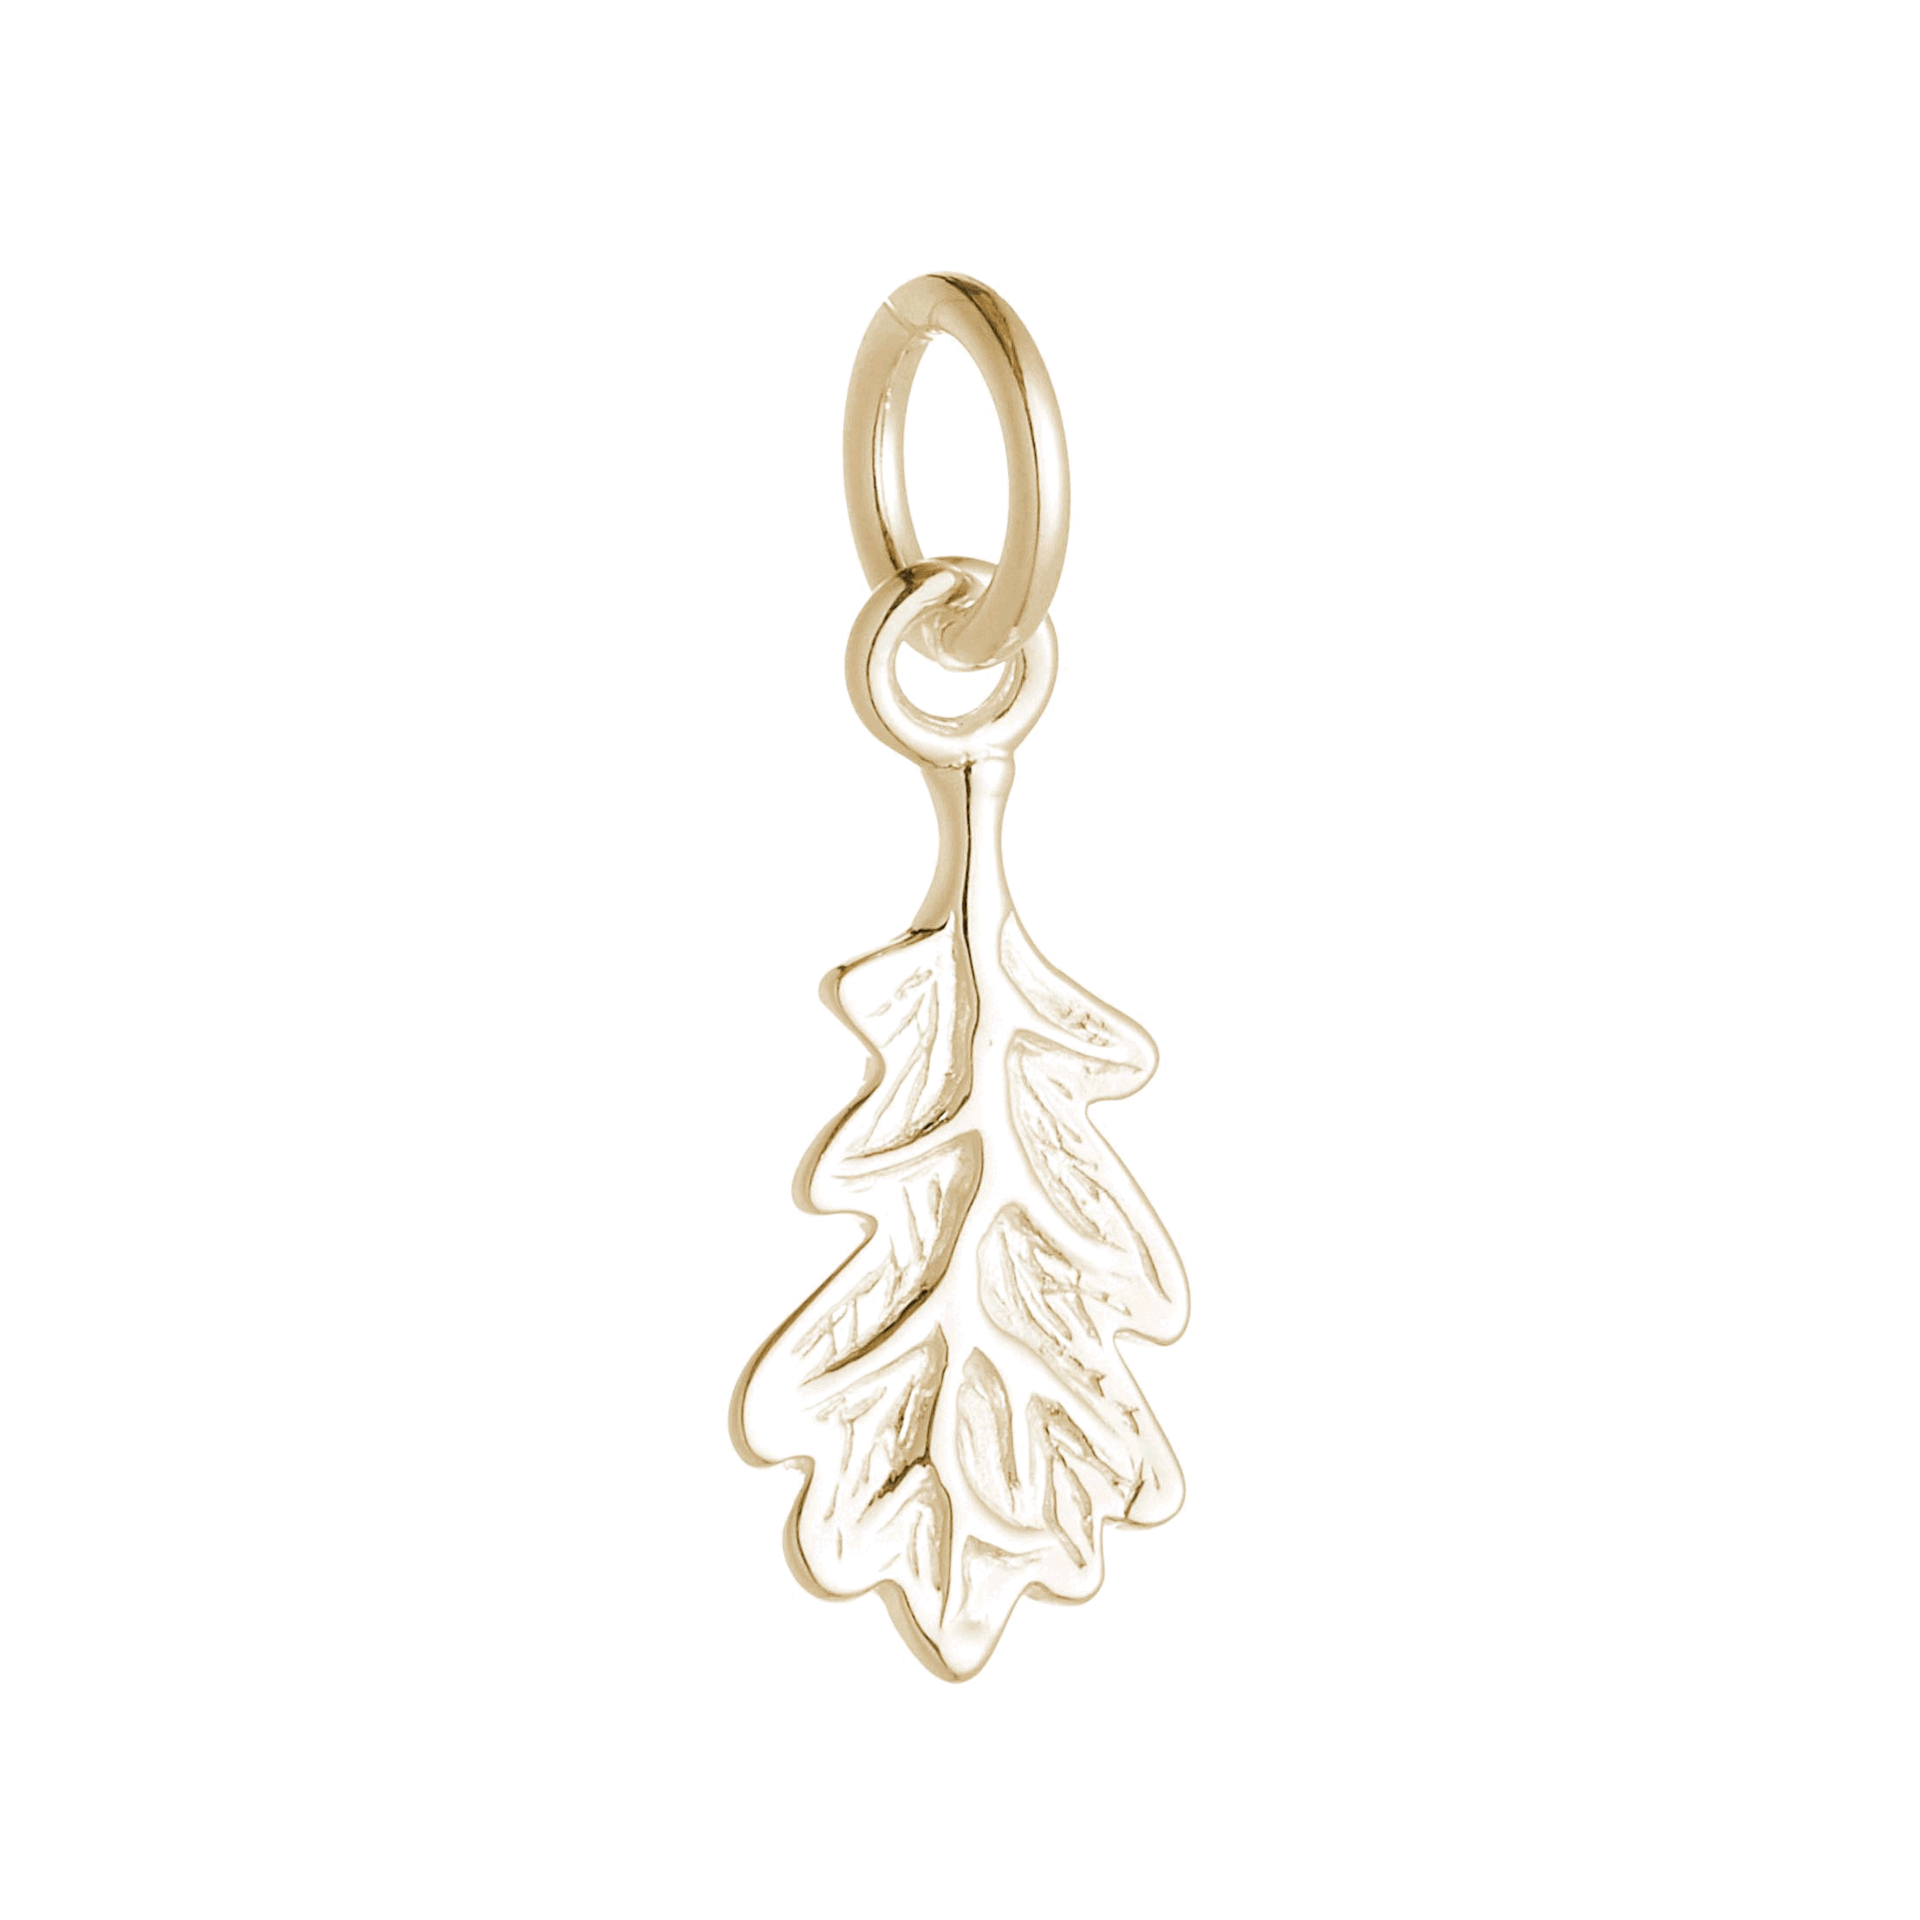 solid gold oak leaf charm for a pendant or bracelet